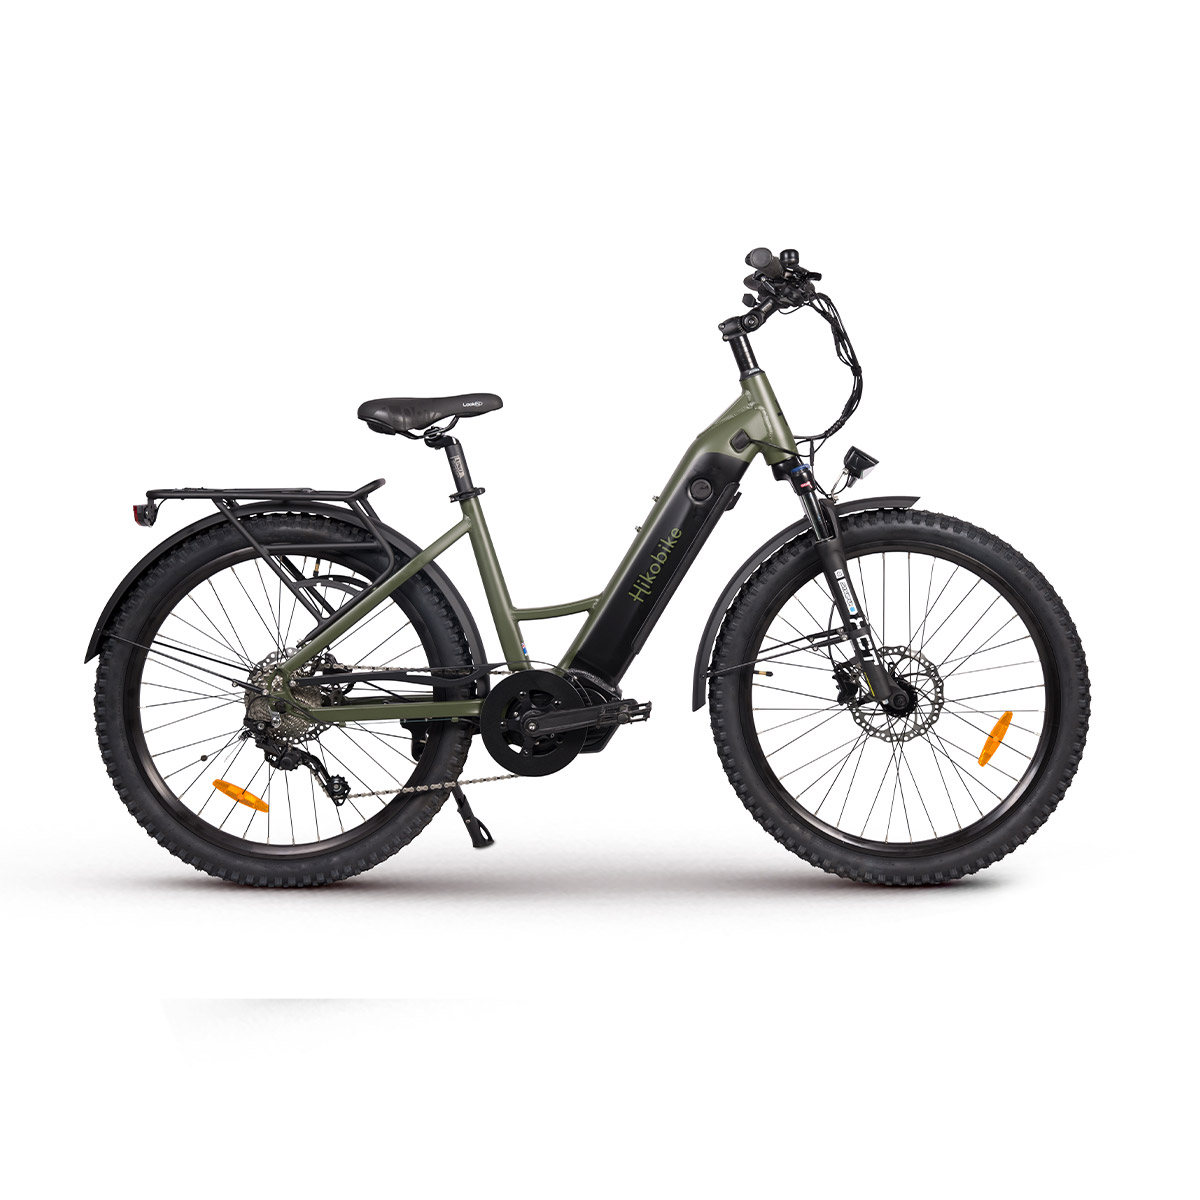 Vibe e-Bike - Olive green electric bike - Hikobike